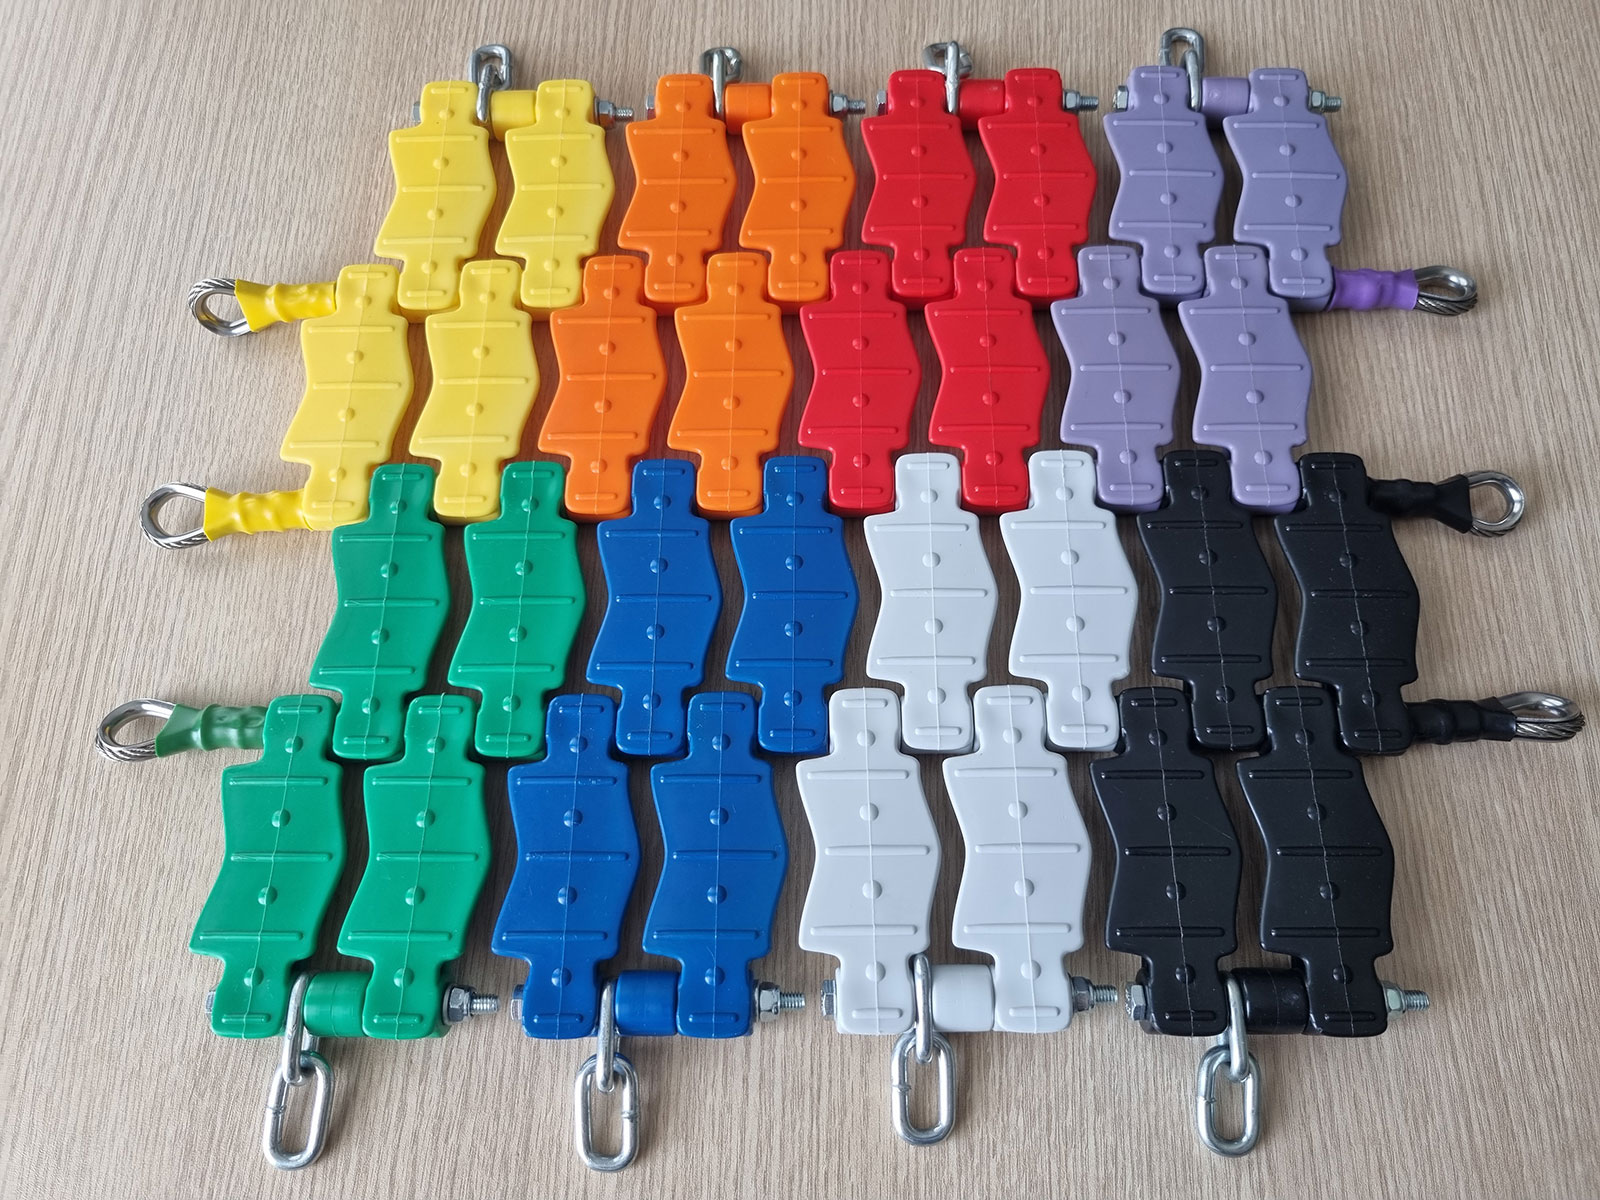 Farbmuster mit verfügbaren Farben für die Gestaltung von Grafiken auf den Sprungmatten von Trampolinen.